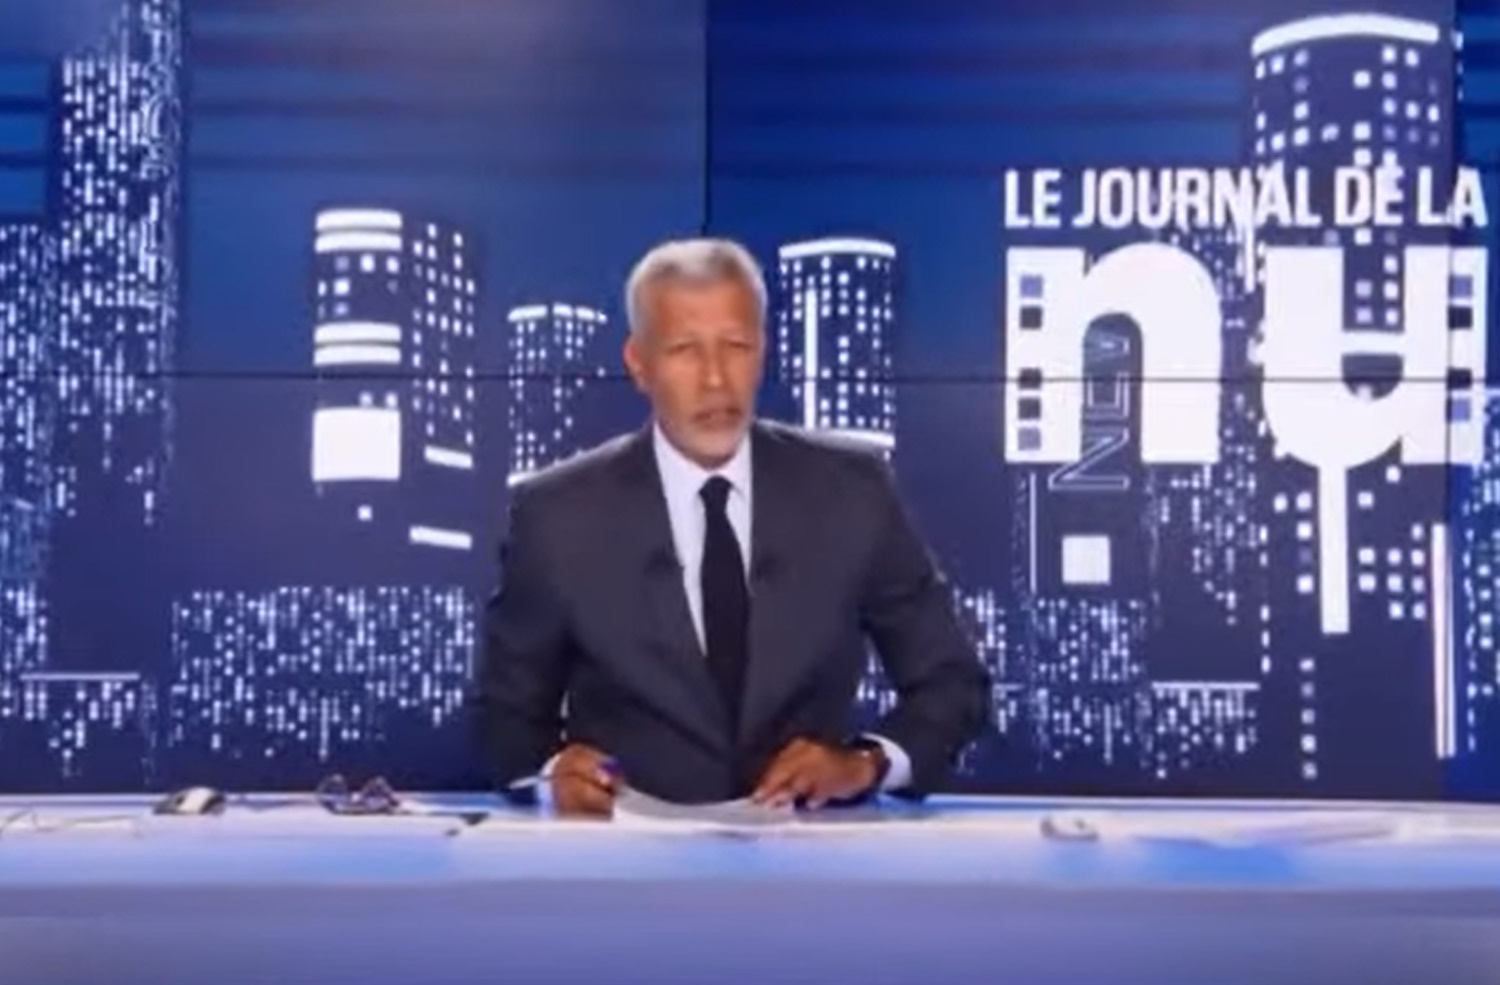 Γαλλία: Το BFMTV απέλυσε δημοσιογράφο μετά από έρευνα ότι αναμειγνύονται ξένες δυνάμεις